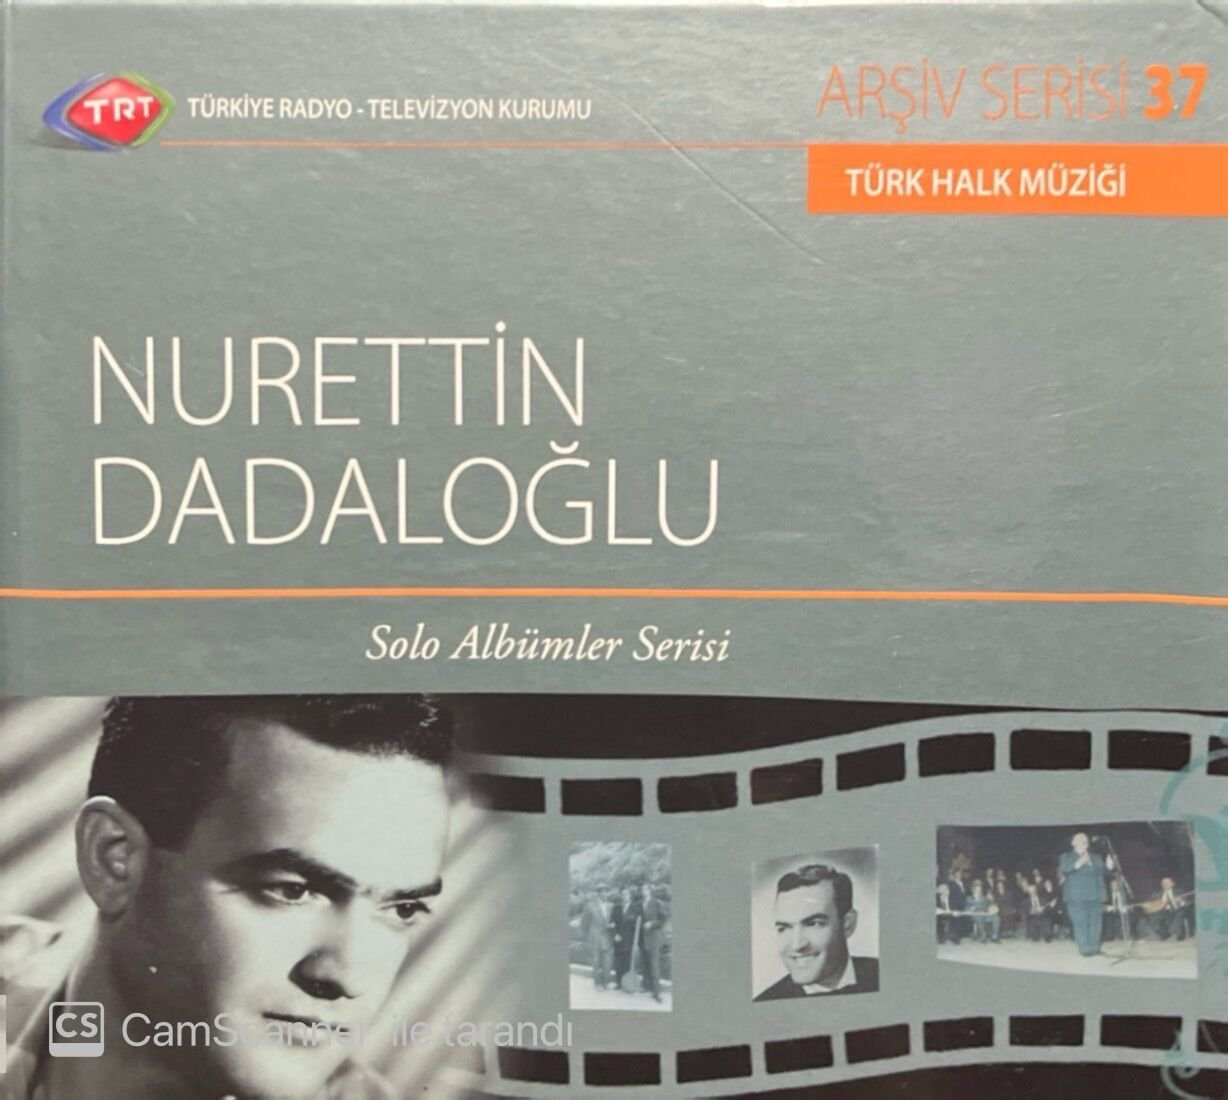 TRT Arşiv Serisi 37 Nurettin Dadaloğlu CD